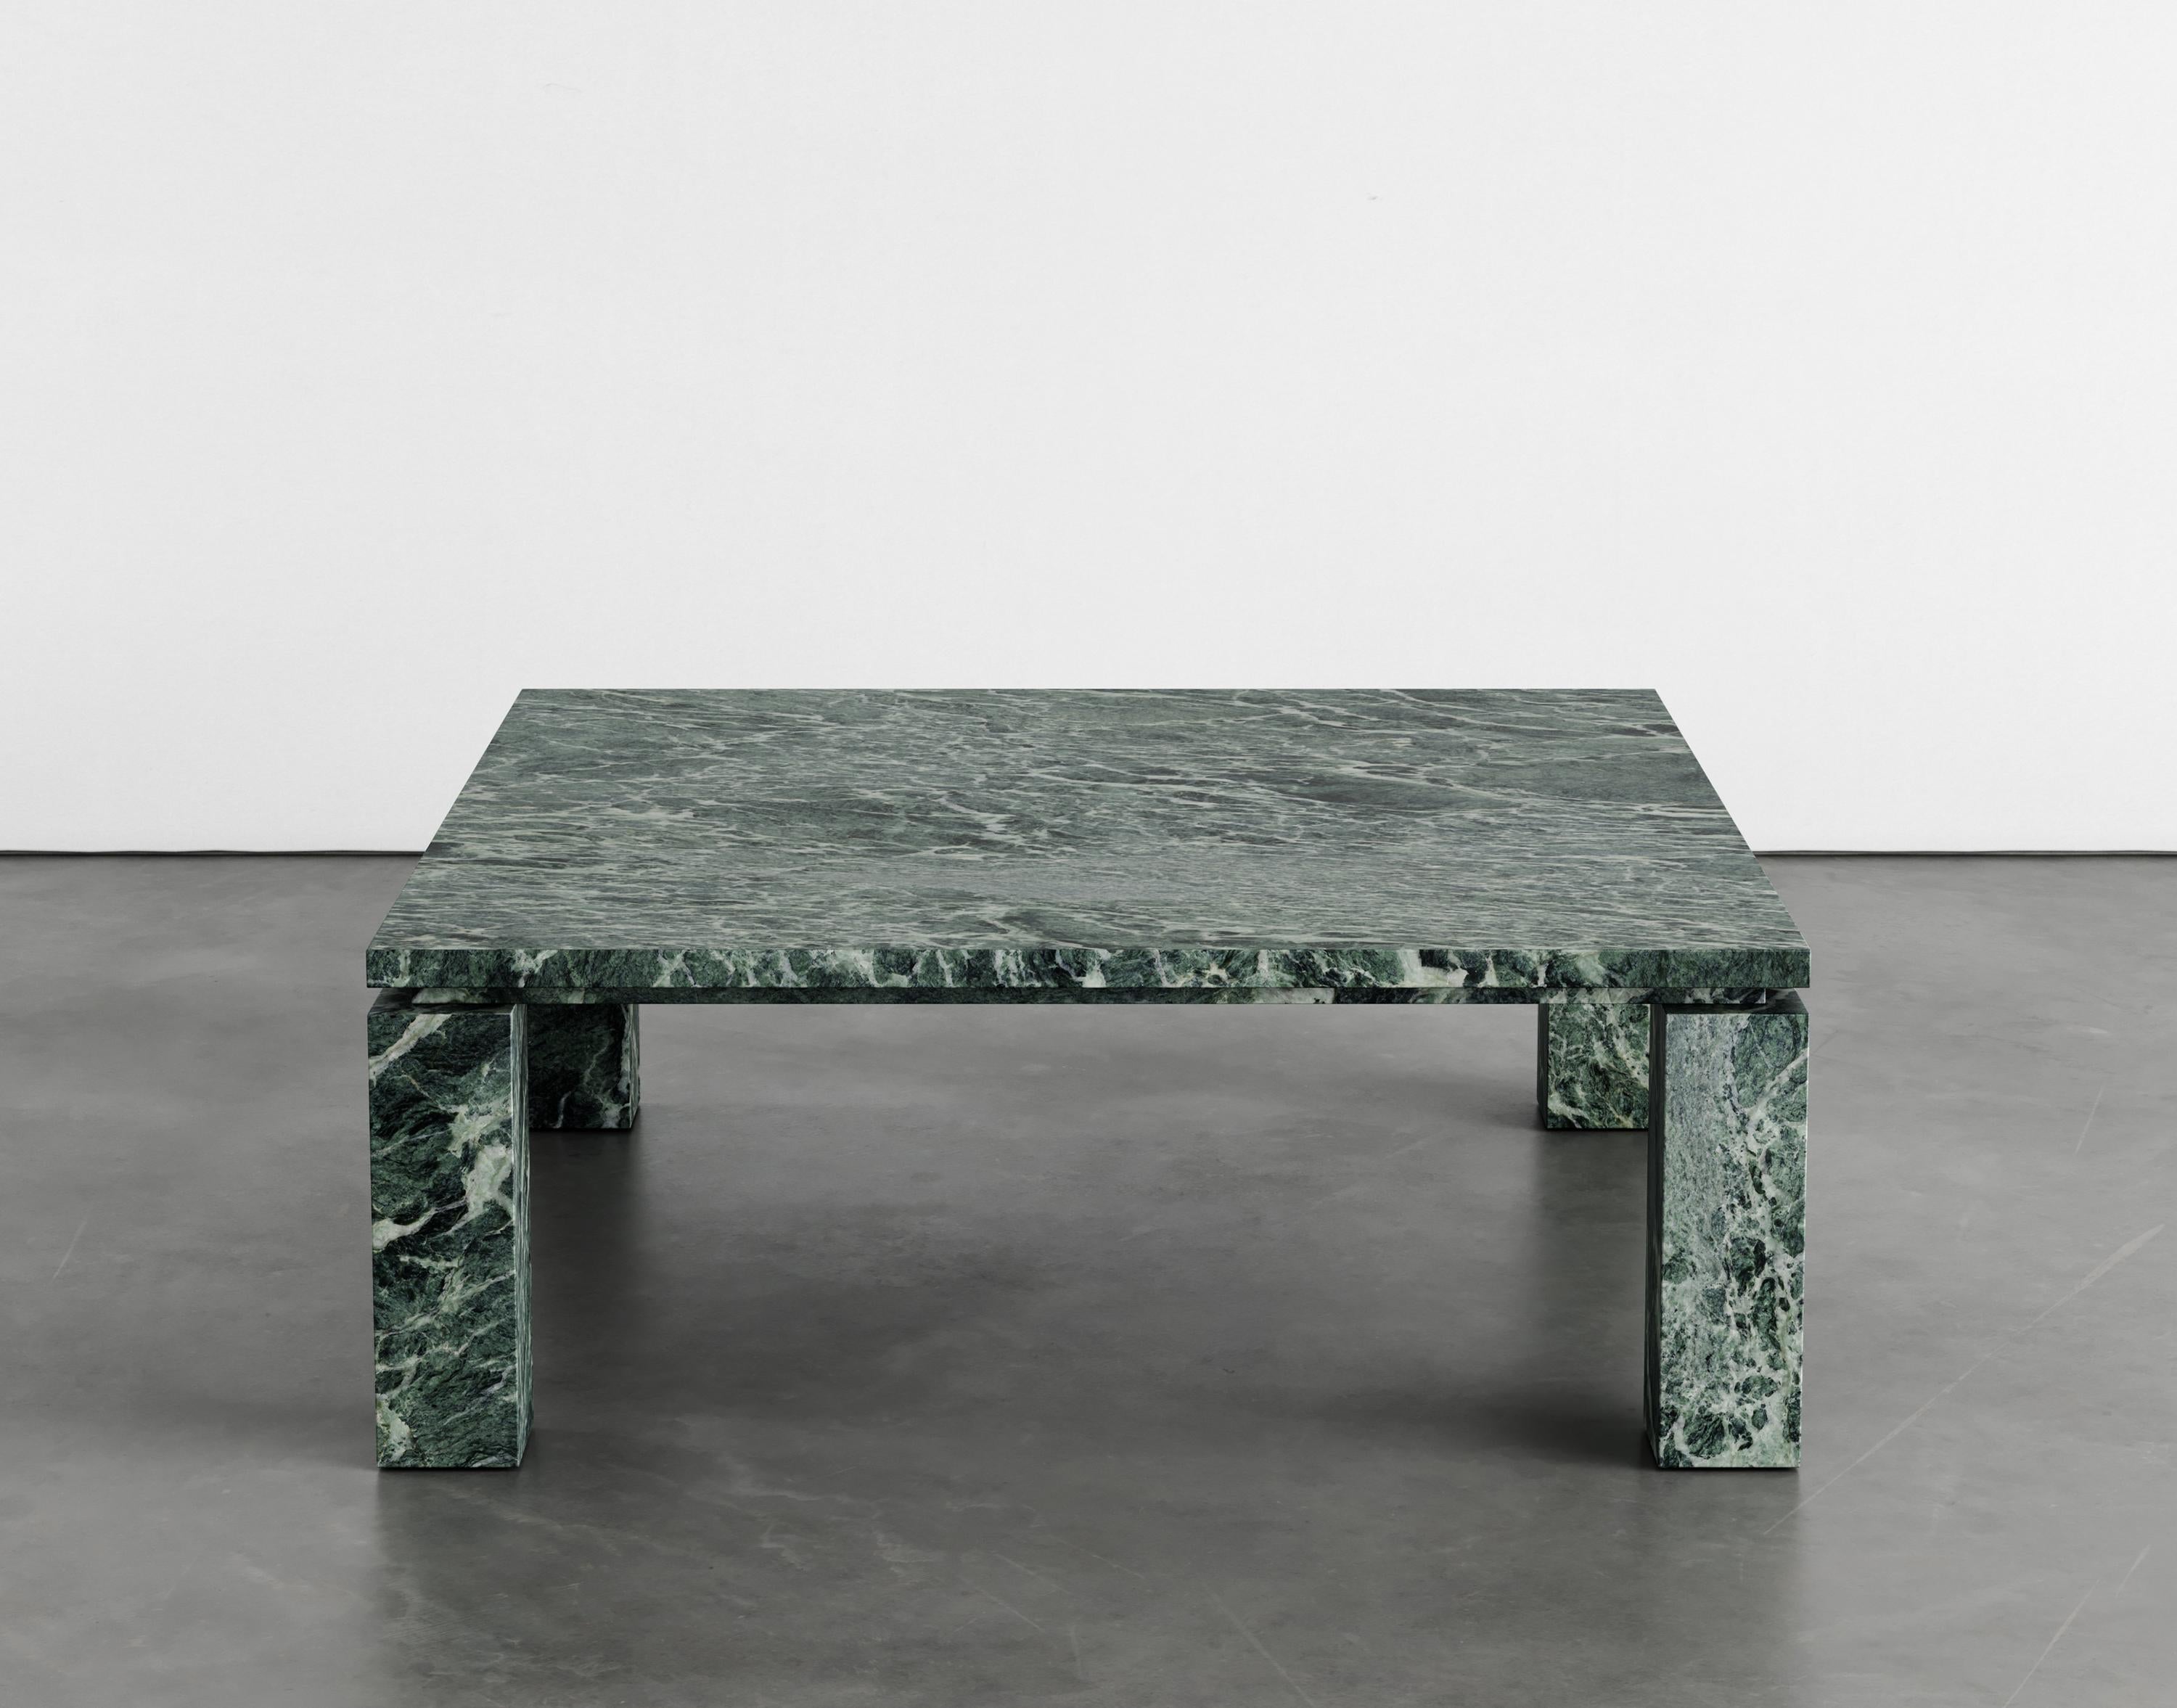 Table basse en marbre MarCo par Agglomerati
Dimensions : D 120 x L 120 x H 41 cm
Matériaux : Marbre Verde Alpi
Disponible dans d'autres pierres.

La table basse MarCo est la pièce maîtresse de l'espace de vie. Les grandes proportions sont